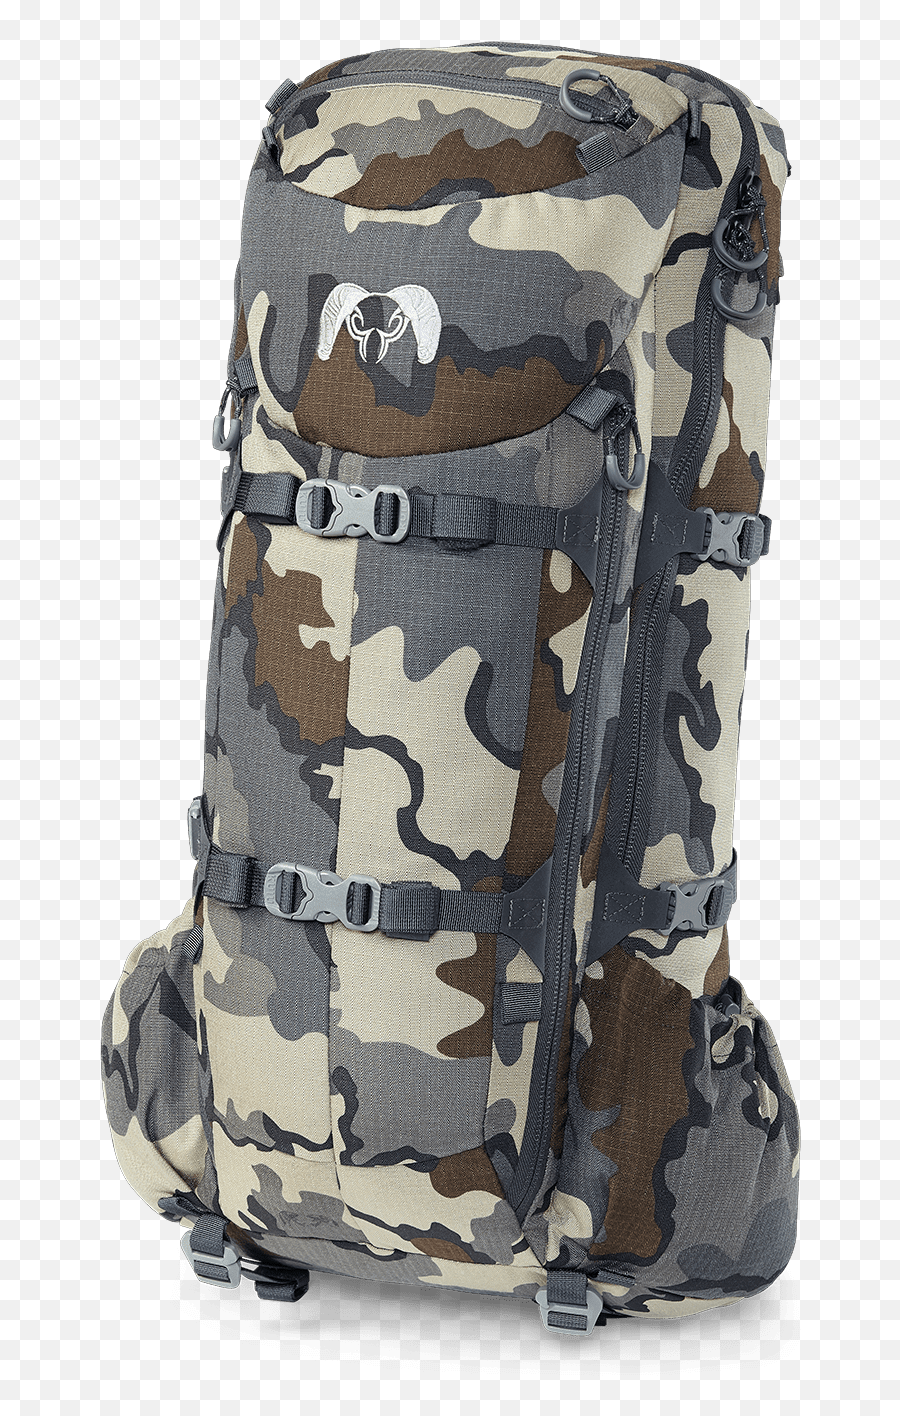 Pro 2300 Bag - Australian Multicam Camouflage Uniform Png,Kuiu Icon Pro 1850